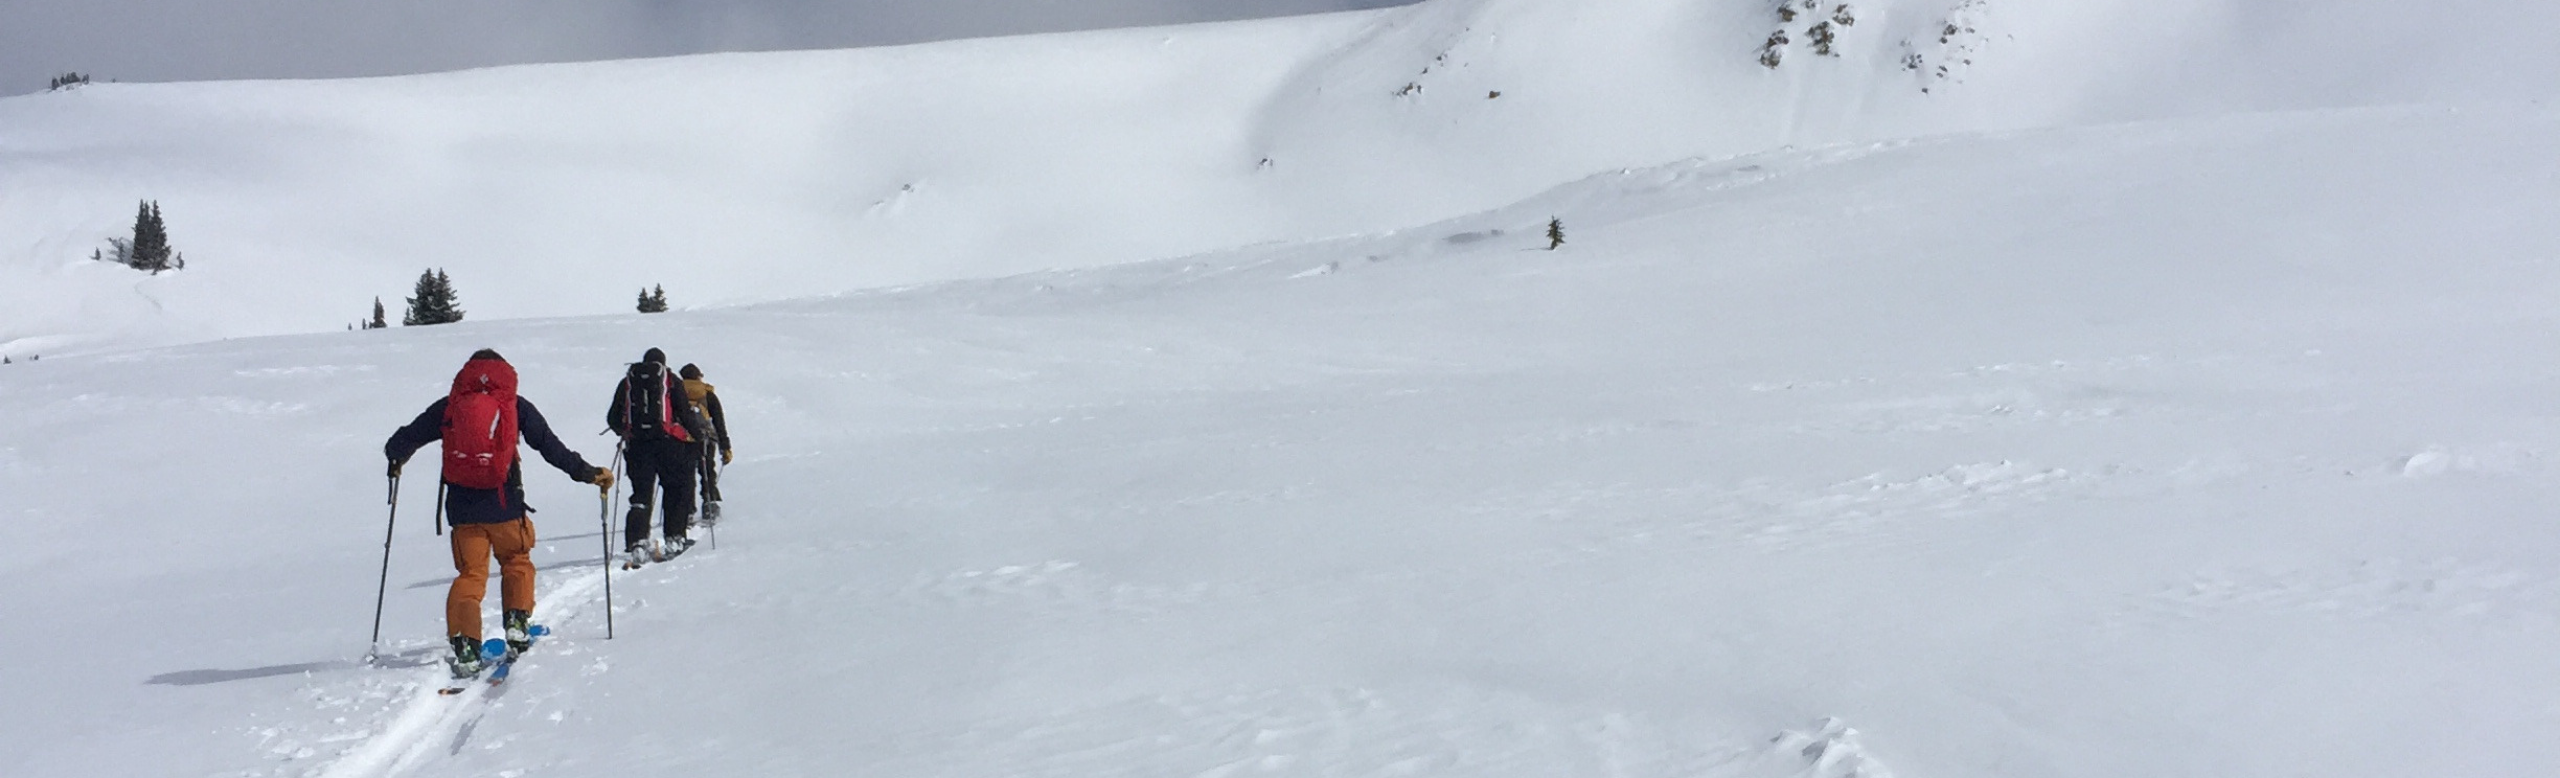 ski-backcountry